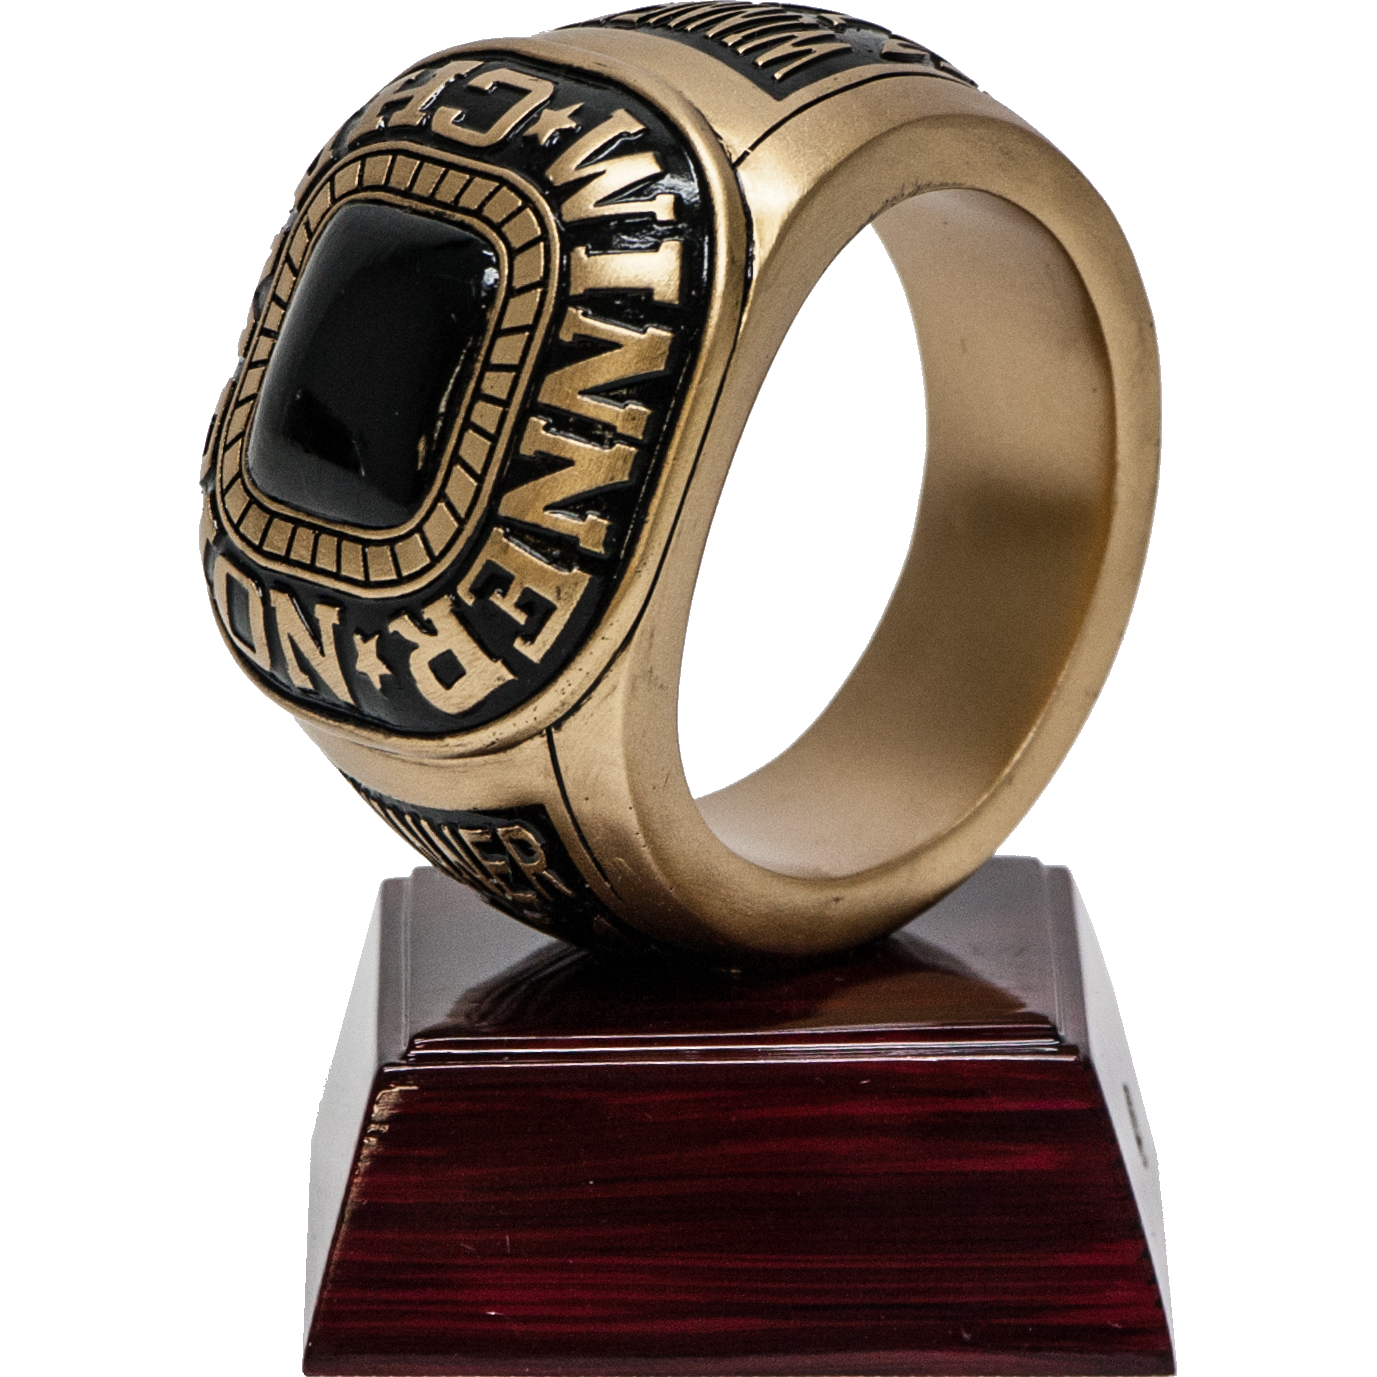 Champions Ring Award